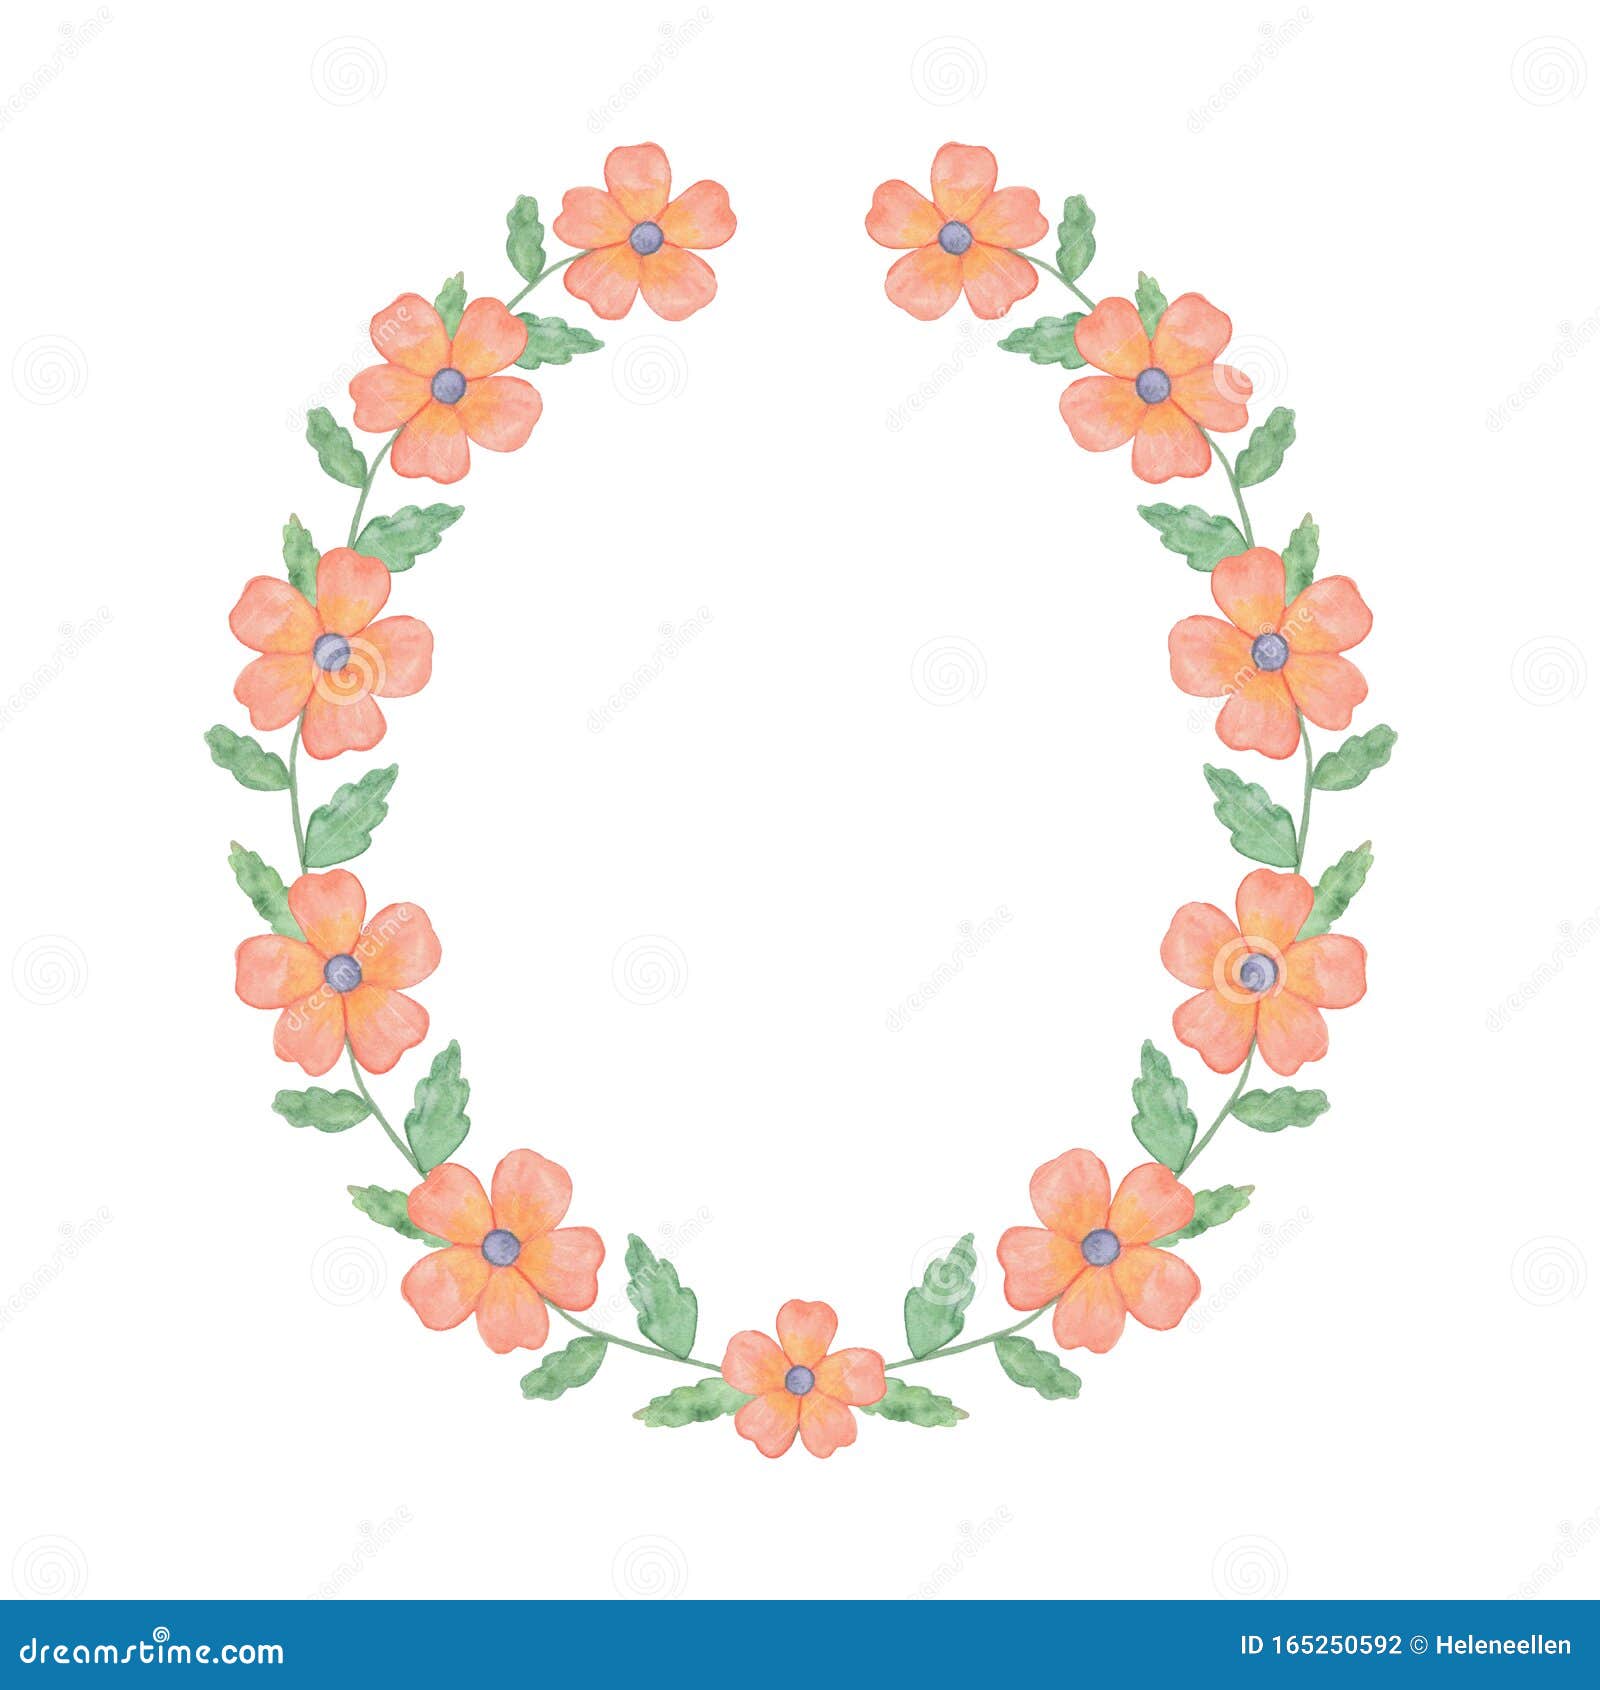 Flores Decorativas Rosas, Flores óseas De Fondo Blanco, Ilustración Simple,  Composición Floral Stock de ilustración - Ilustración de modelo, floral:  165250592